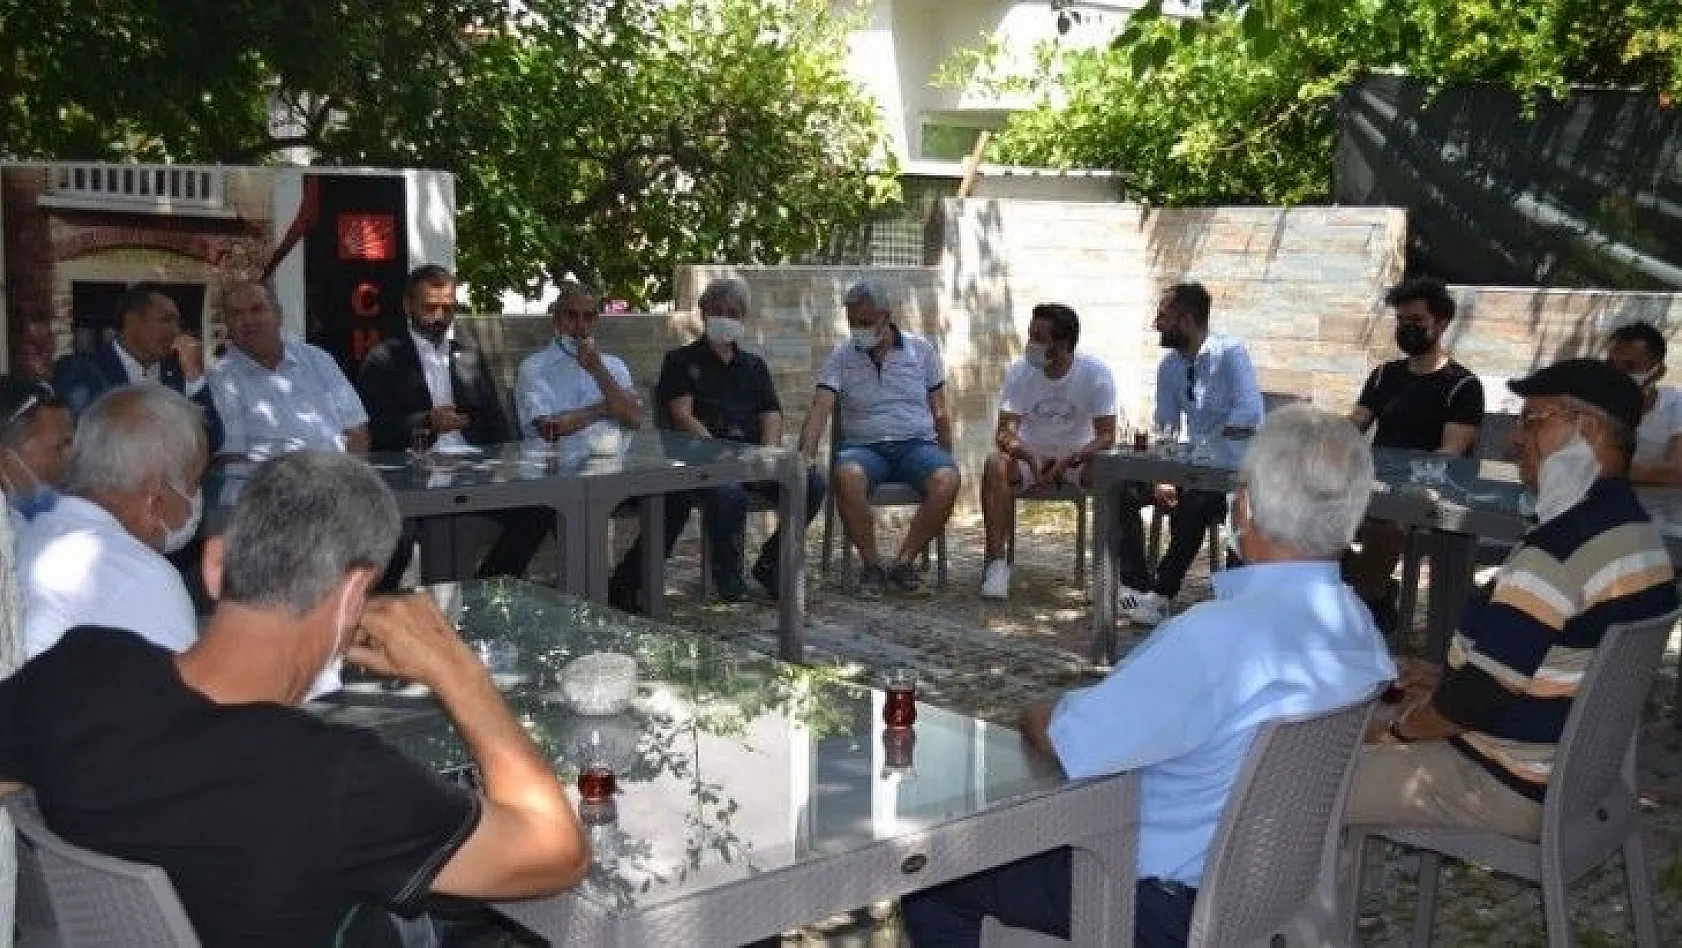 CHP'li Vekiller, Fethiye İlçe Binasında Partili İle Buluştu